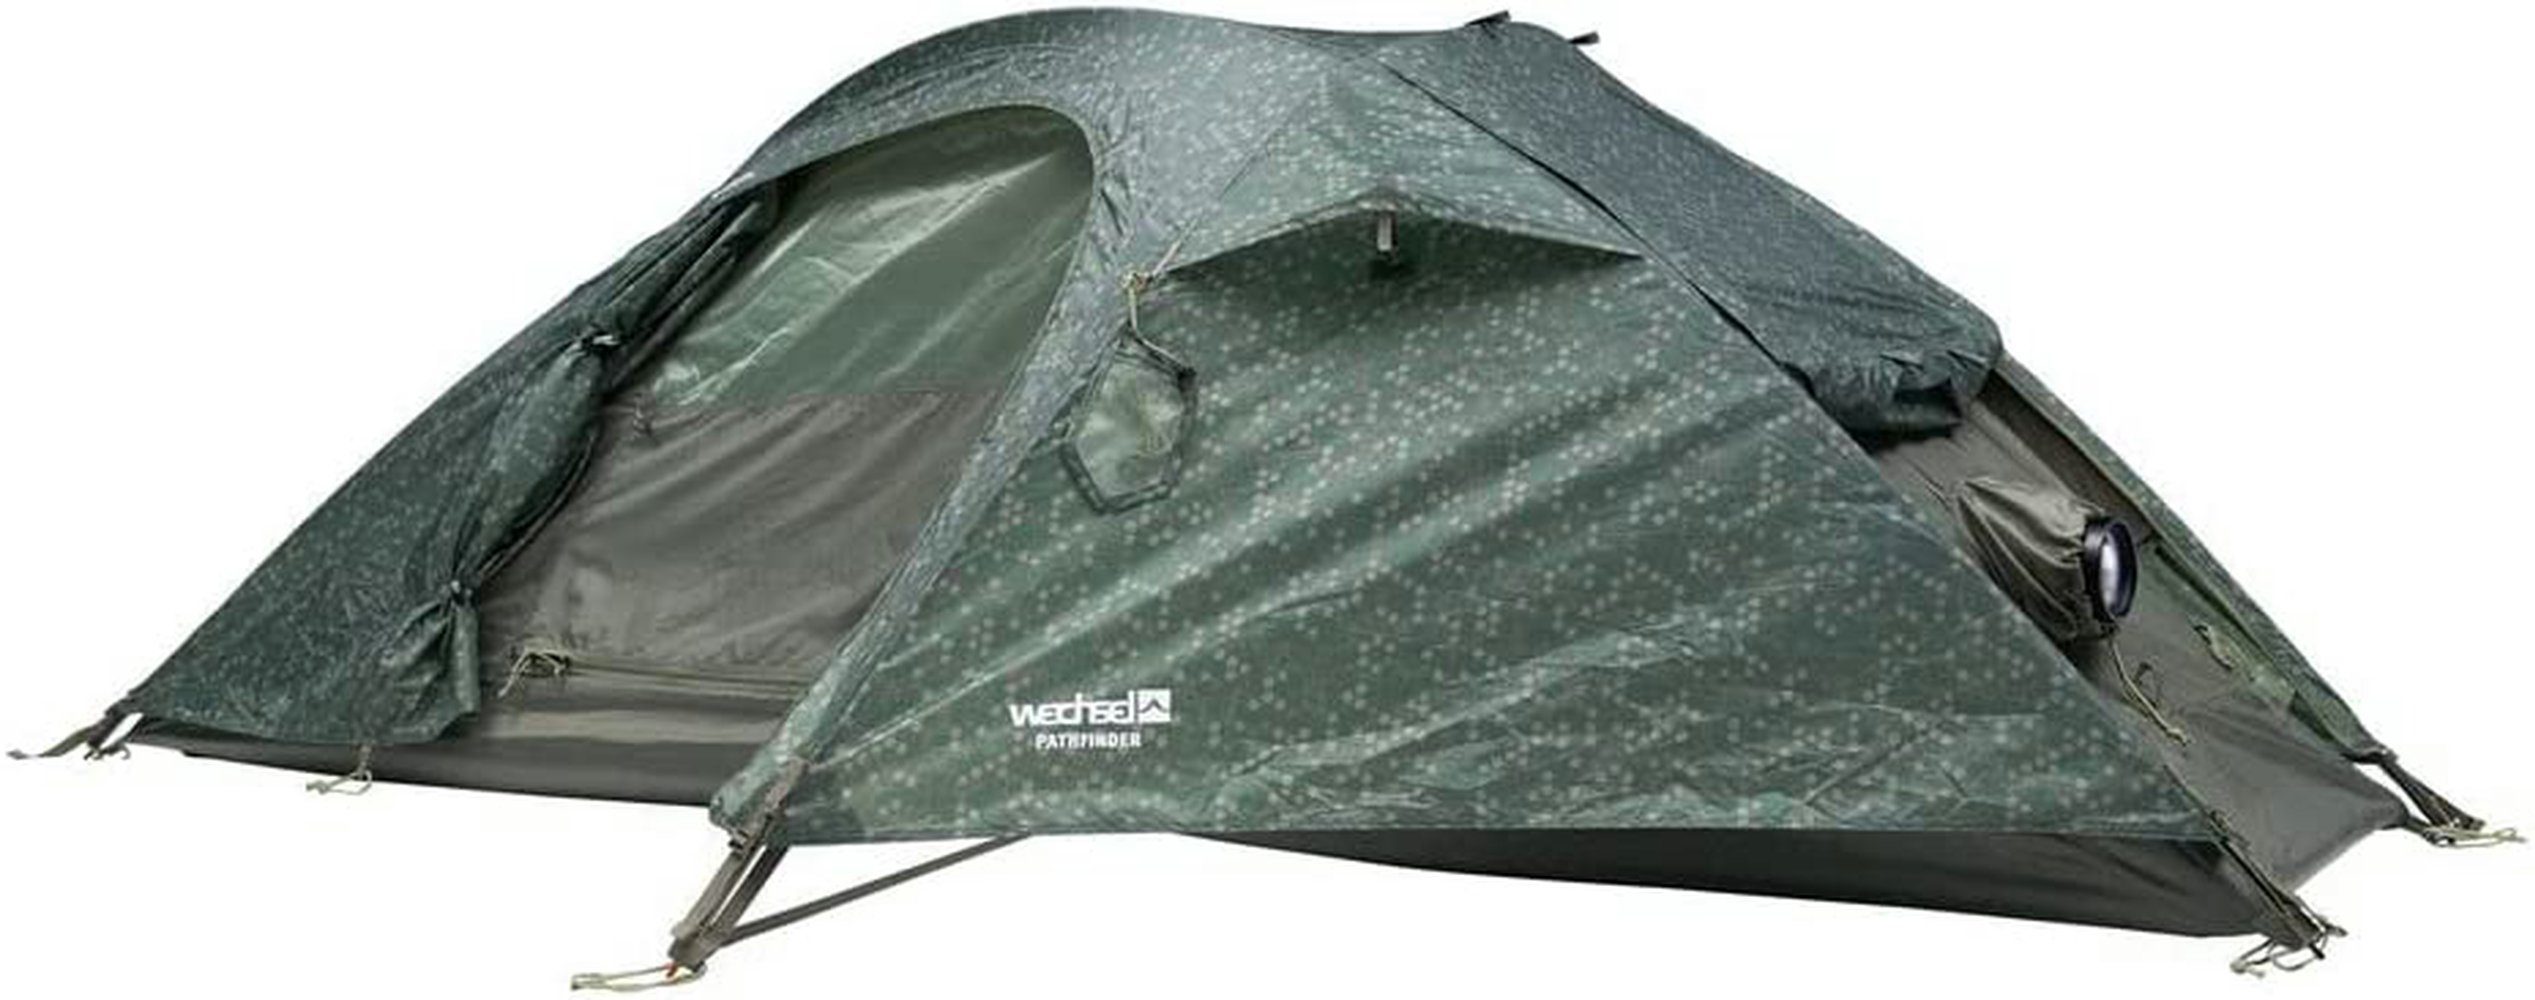 Wechsel Tents Kuppelzelt Pathfinder Stealth, Personen: 1, im Camouflage Look